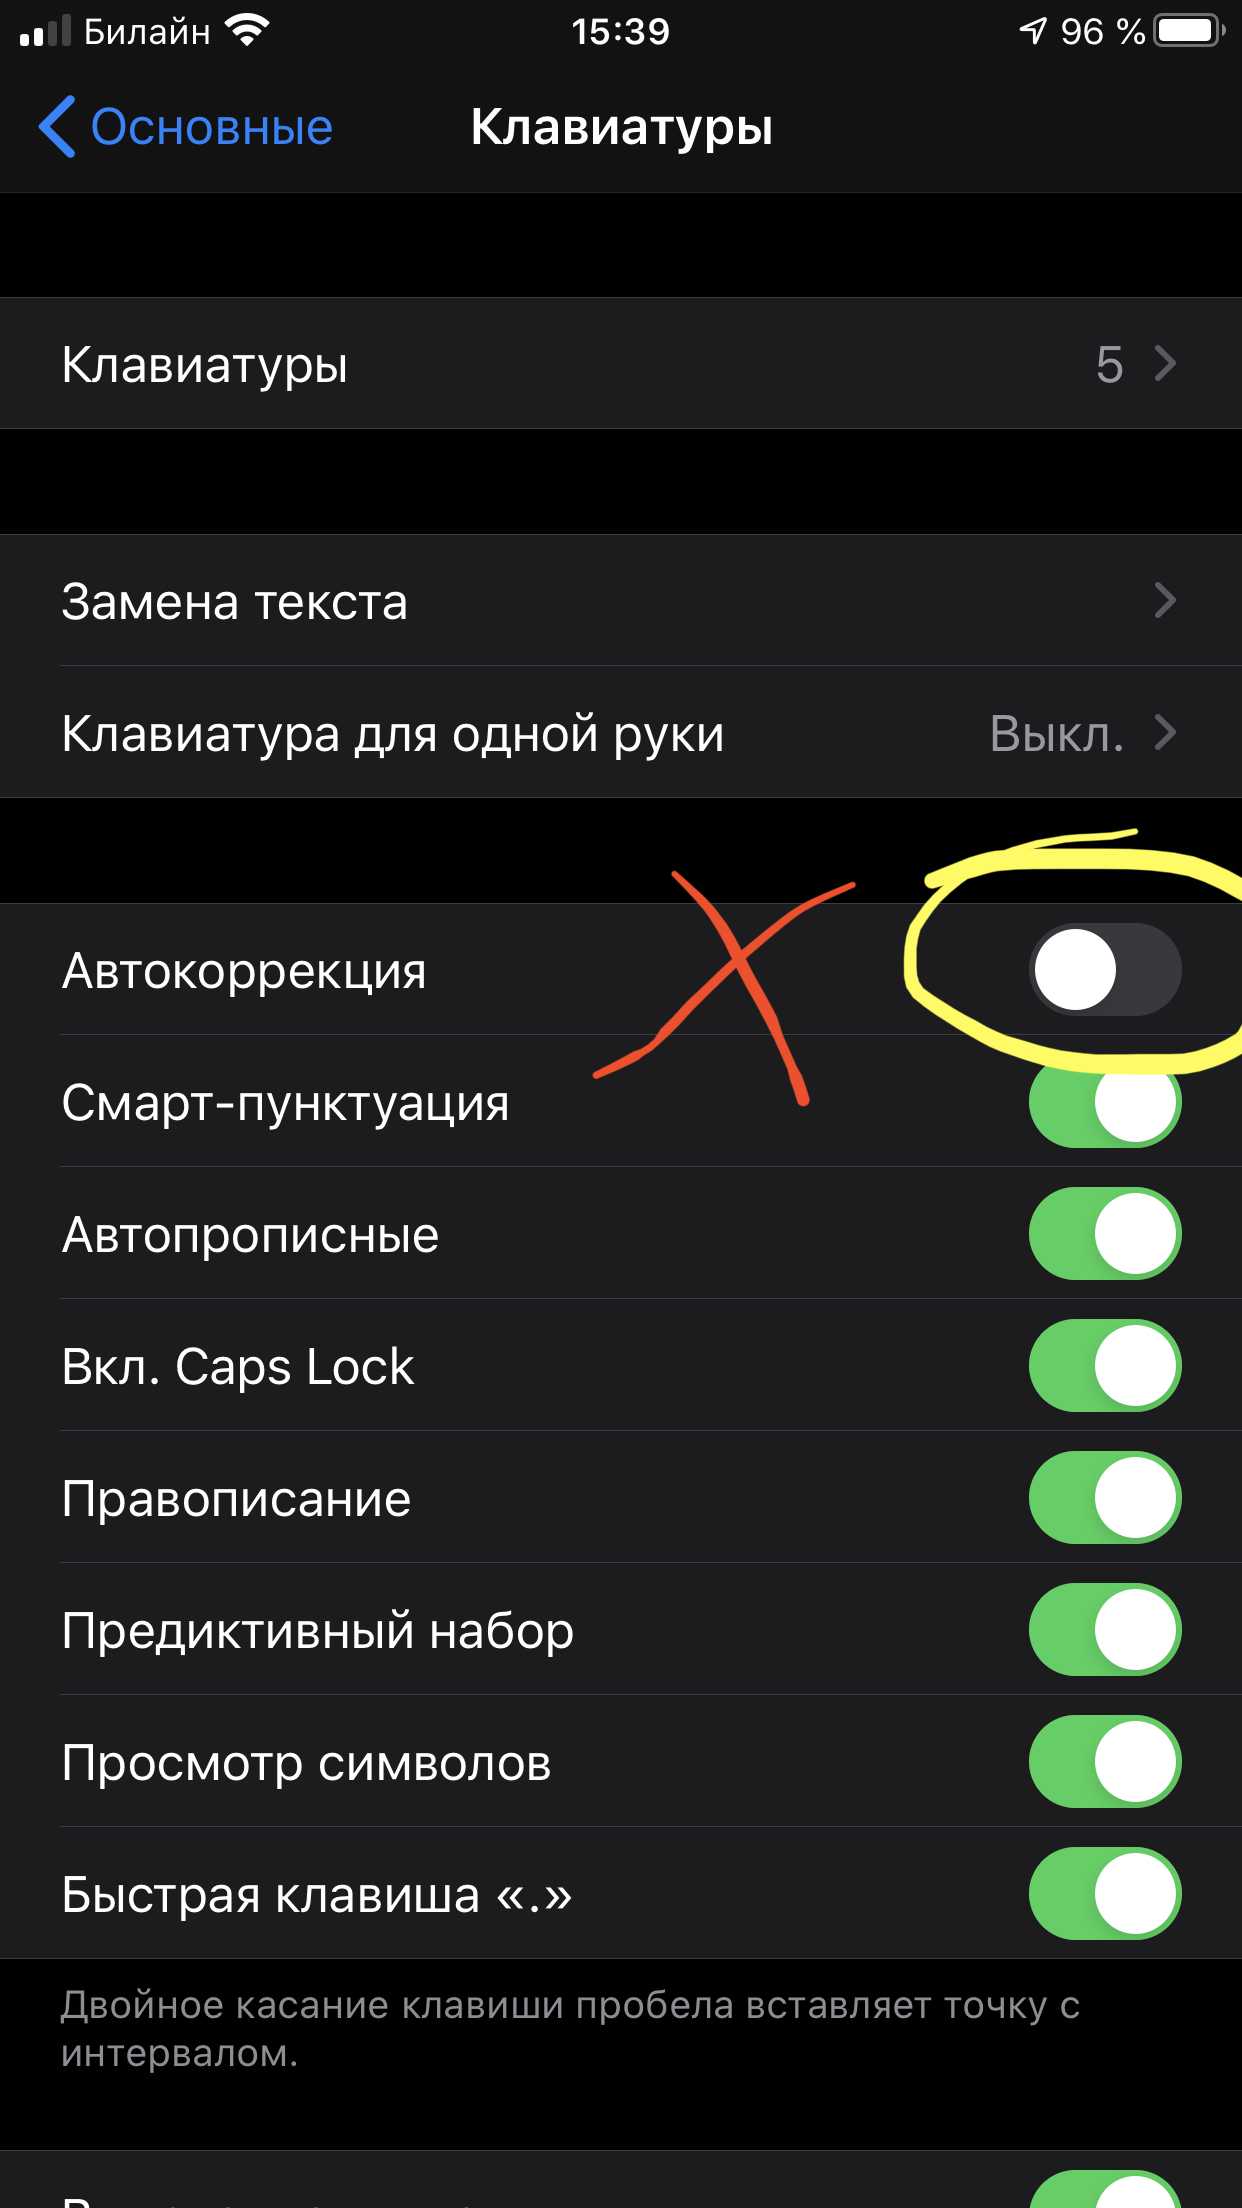 Как убрать т9 на андроиде - инструкция тарифкин.ру
как убрать т9 на андроиде - инструкция